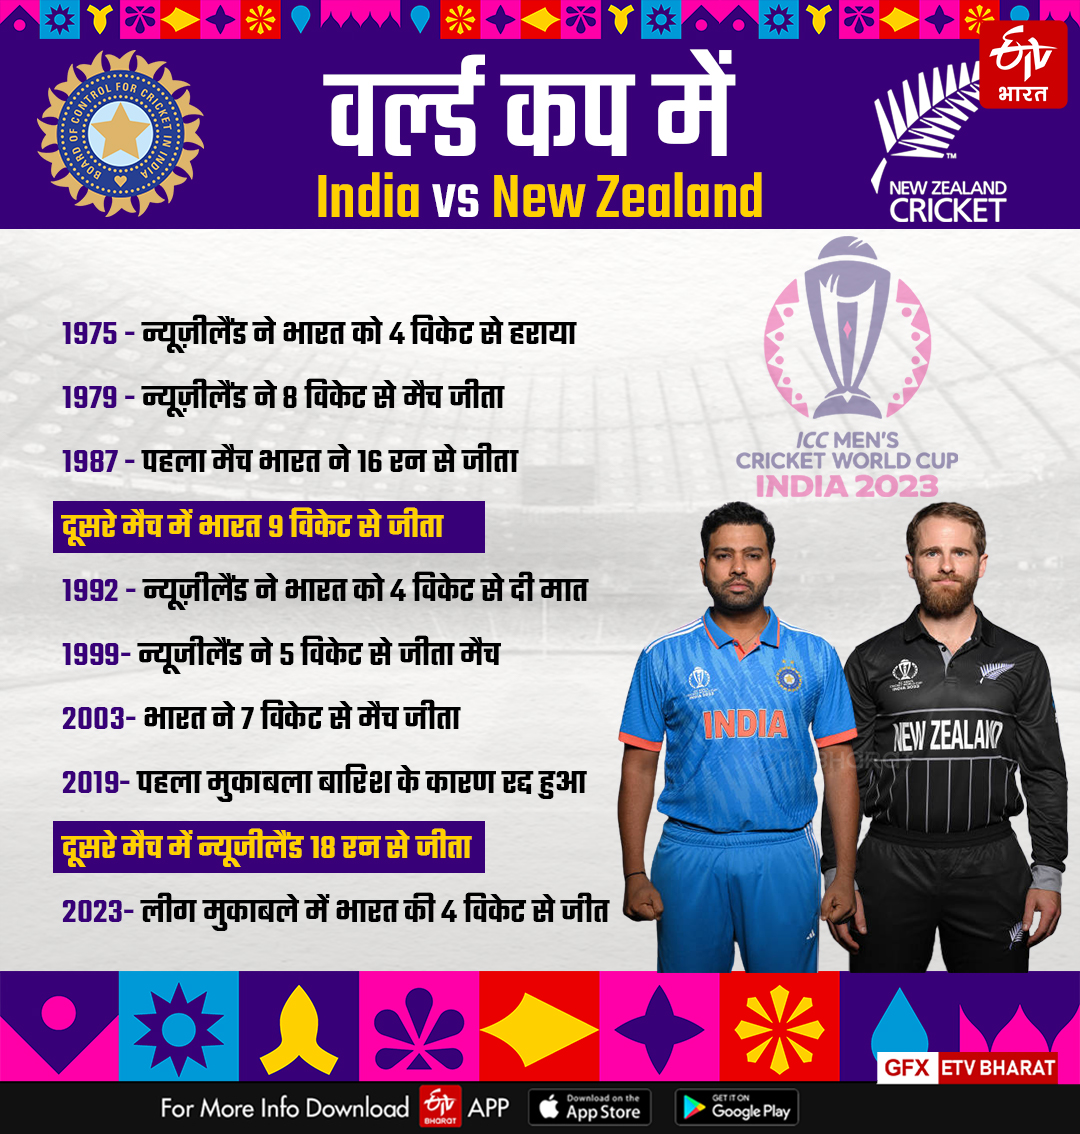 क्रिकेट वर्ल्ड कप में न्यूजीलैंड के खिलाफ भारत का प्रदर्शन